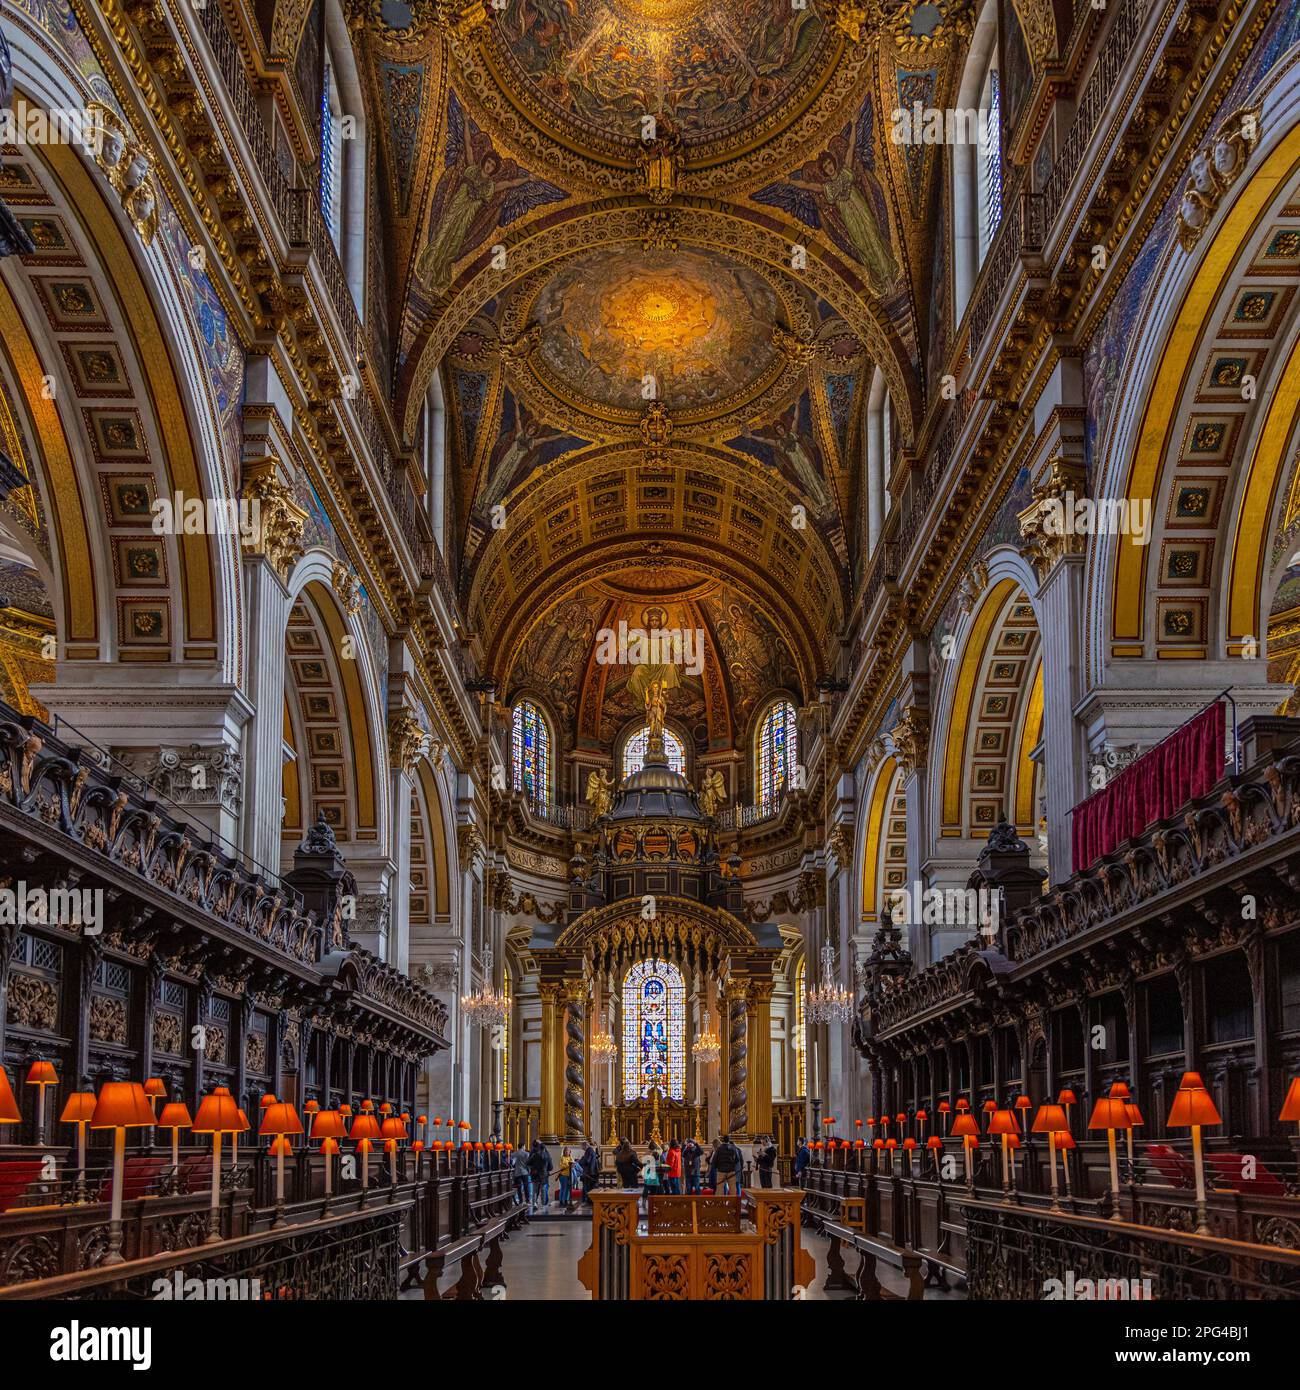 St. Pauls Cathedral Innenbilder in London, England. Das Innere ist erstaunlich mit vielen historischen Ereignissen, die über viele Jahre hinweg geschehen sind. Stockfoto